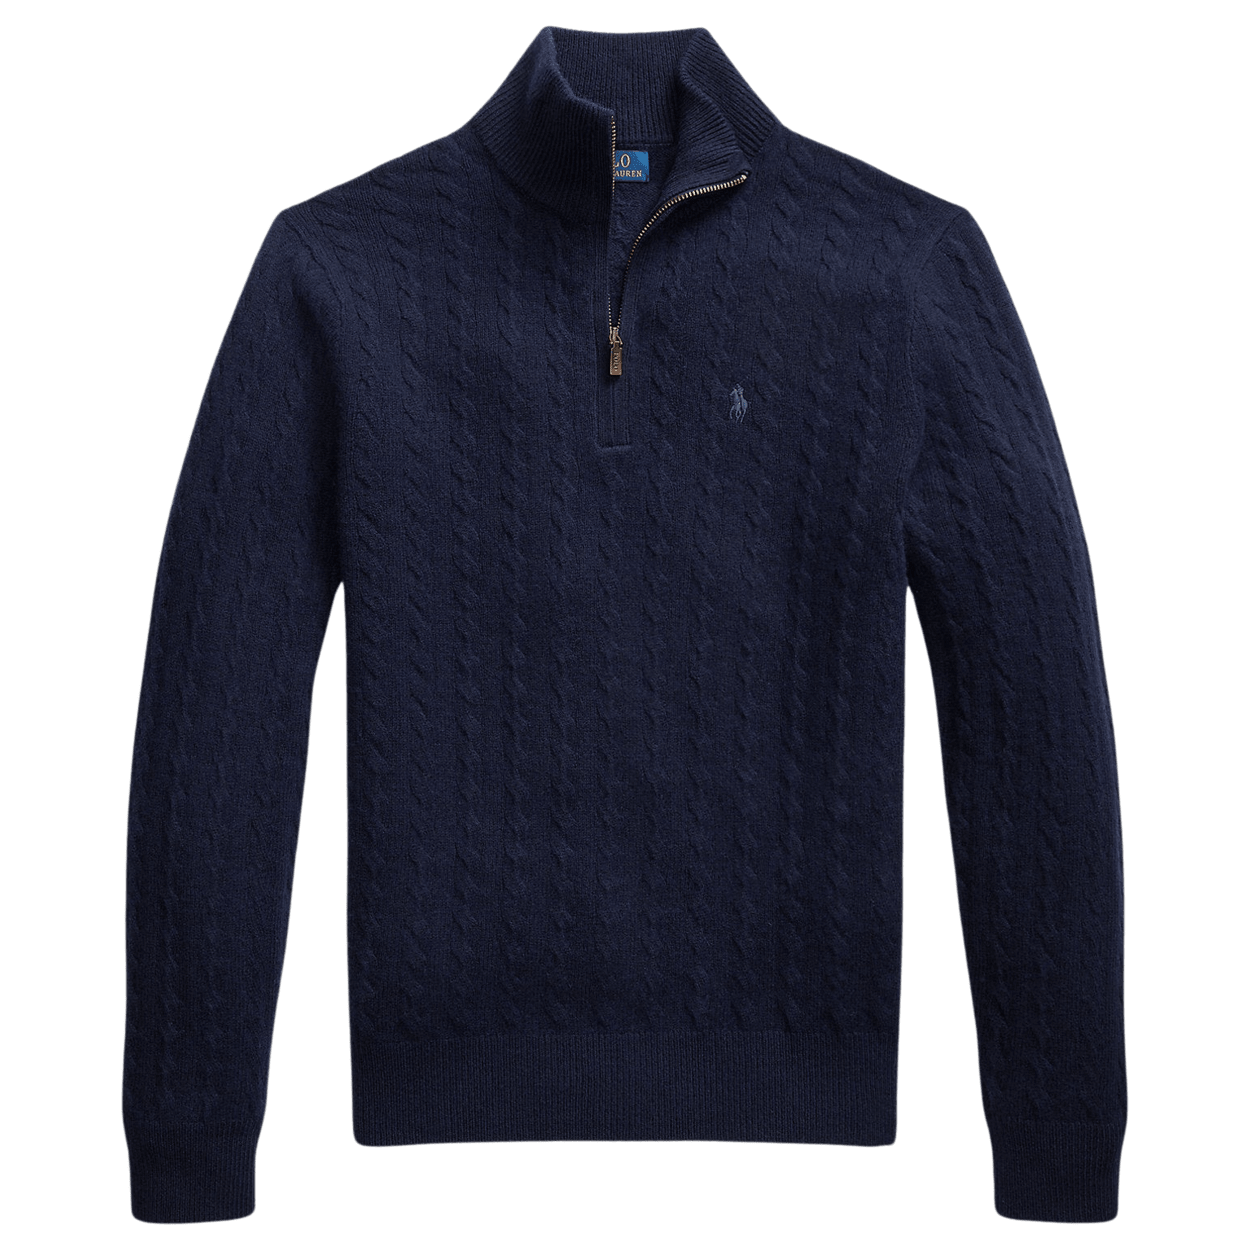 The Wimbledon Online Shop ︳ Wimbledon x Polo Ralph Lauren Men's Cricket  Pullover - Cream